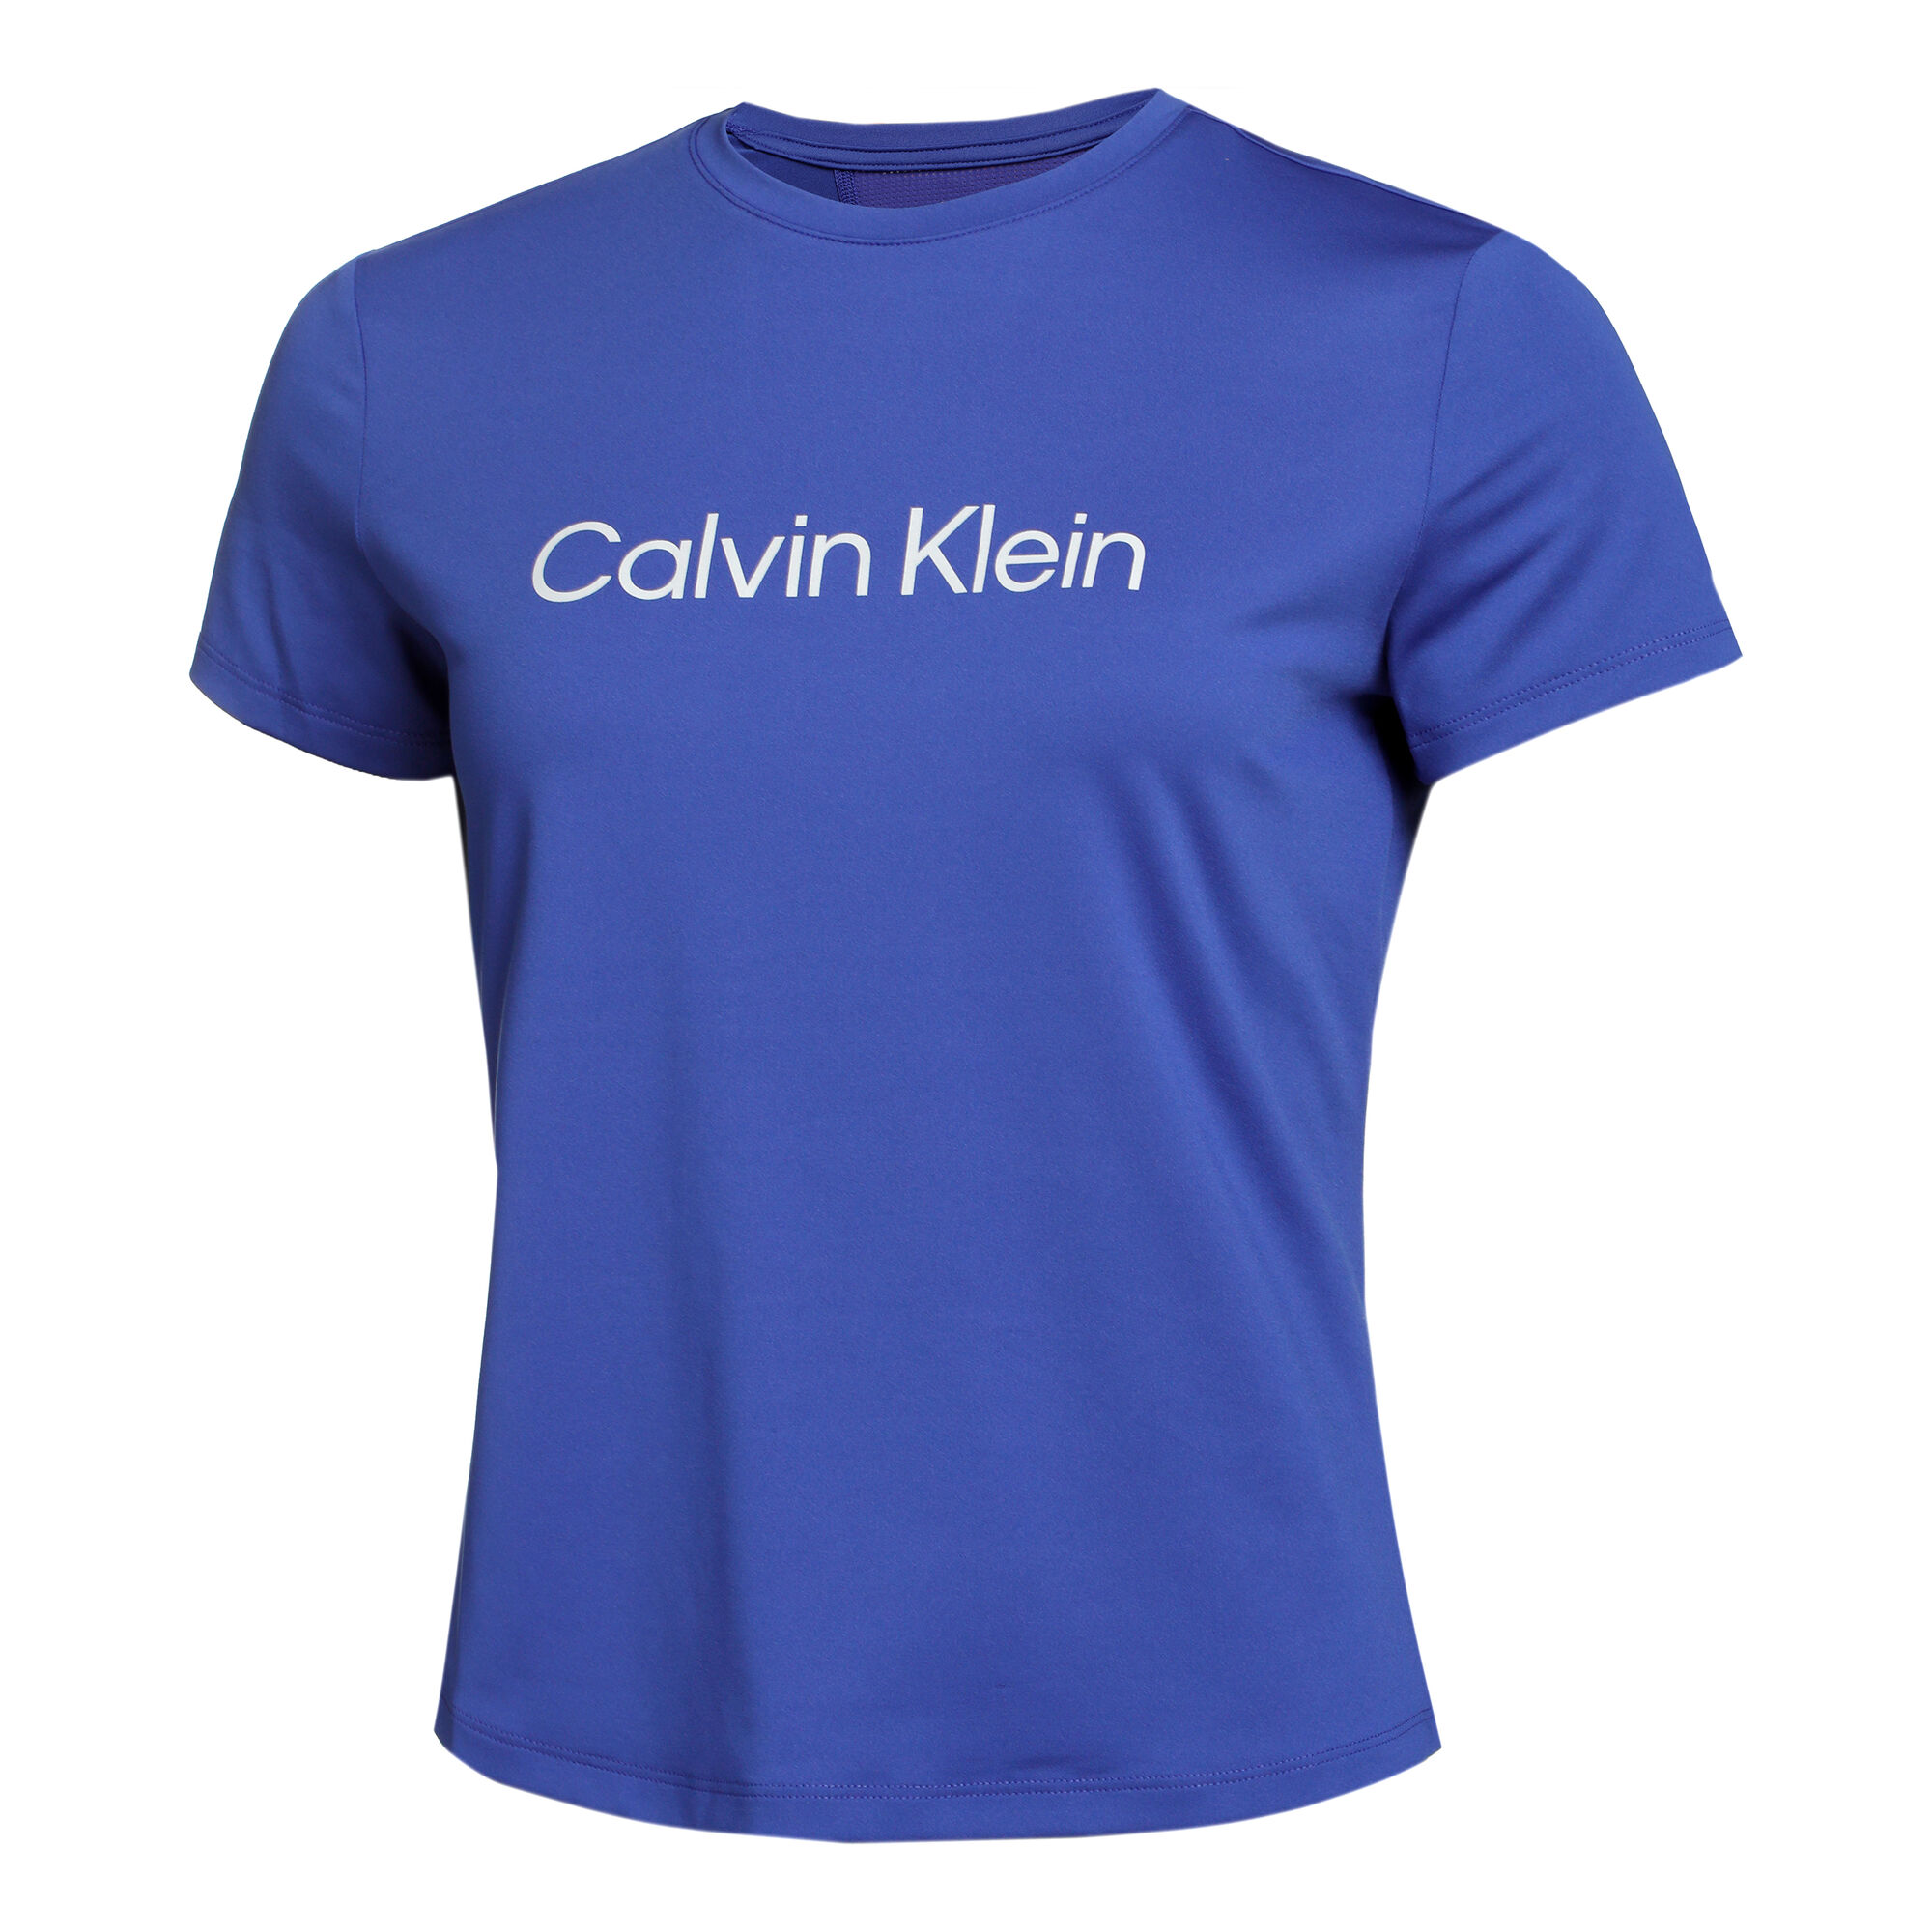 Calvin Klein T-Shirt Damen Blau online kaufen | Tennis Point AT